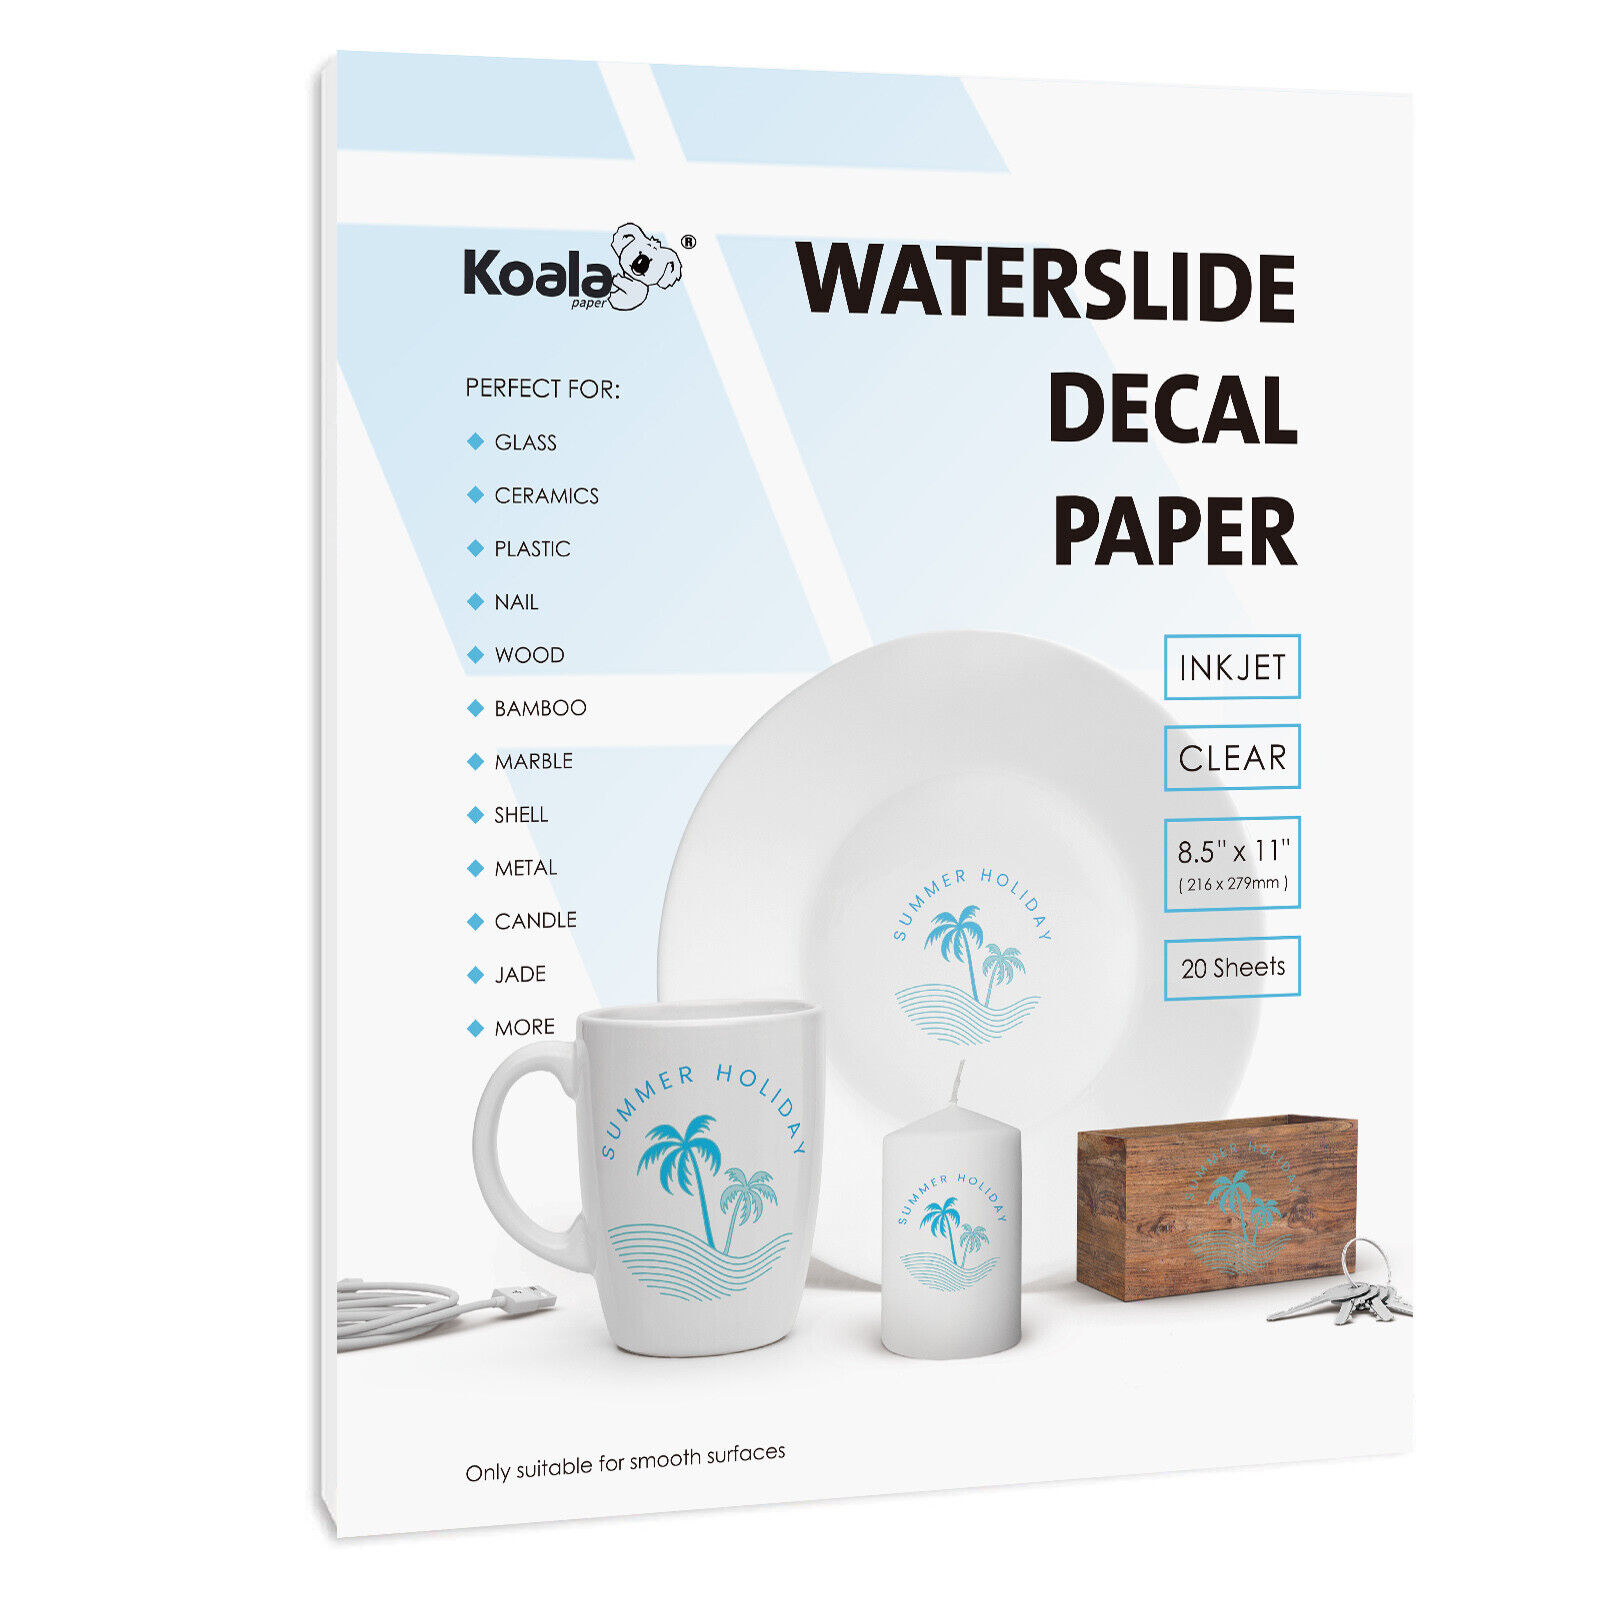 Koala Waterslide Decal Paper Inkjet CLEAR 20 Sheets 8.5x11 Water Slide Transfer